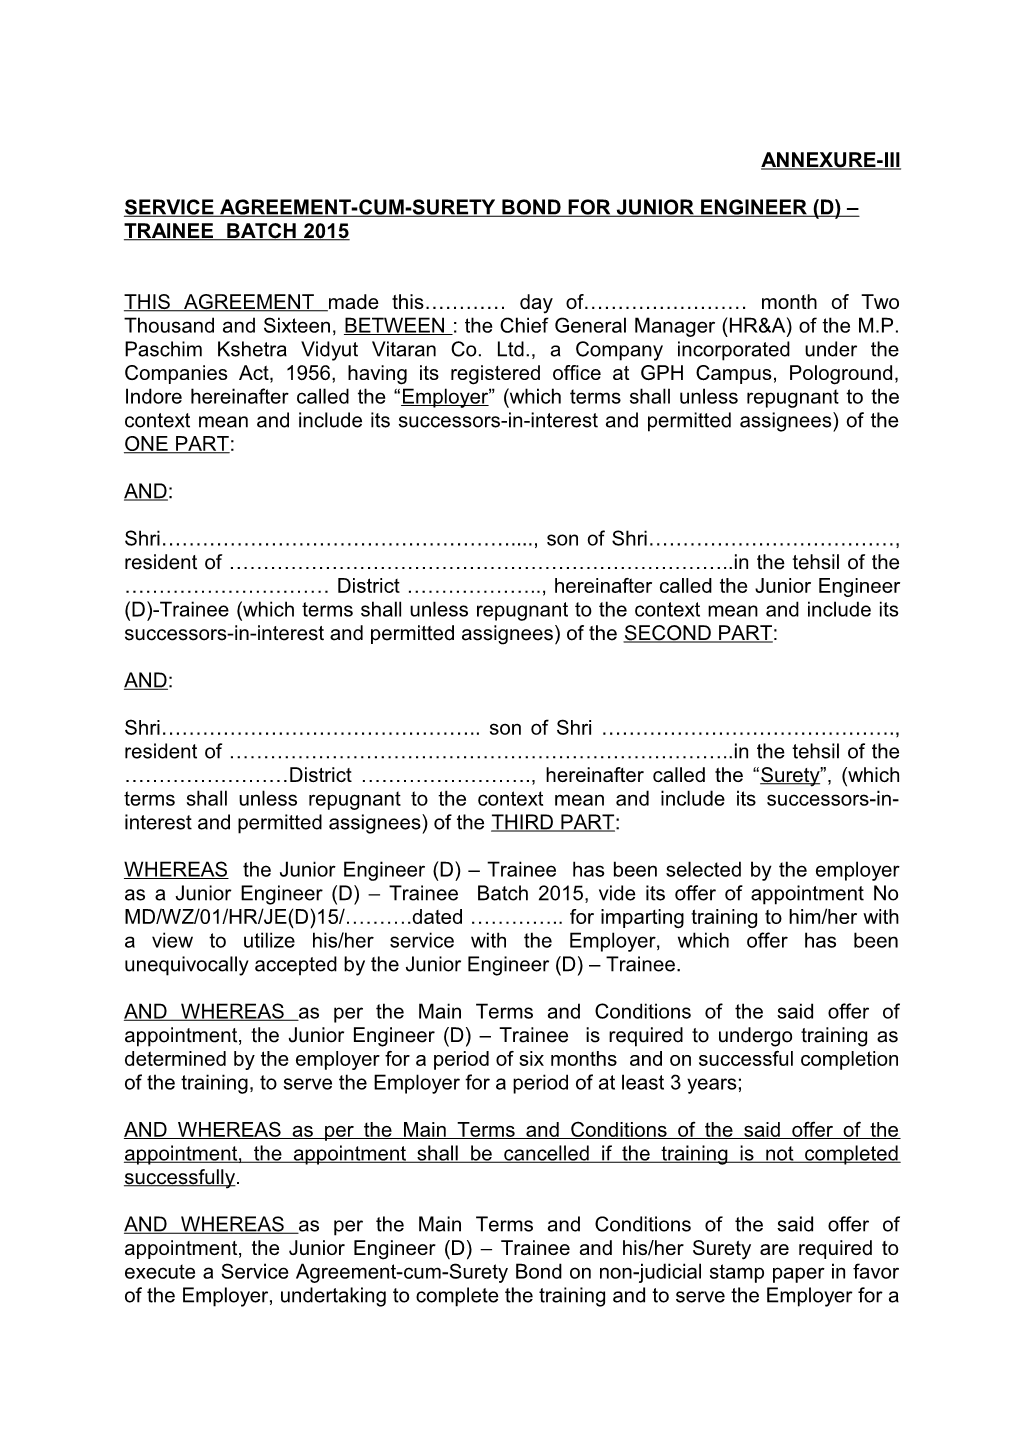 Service Agreement-Cum-Surety Bond for Junior Engineer (D) Trainee Batch 2015